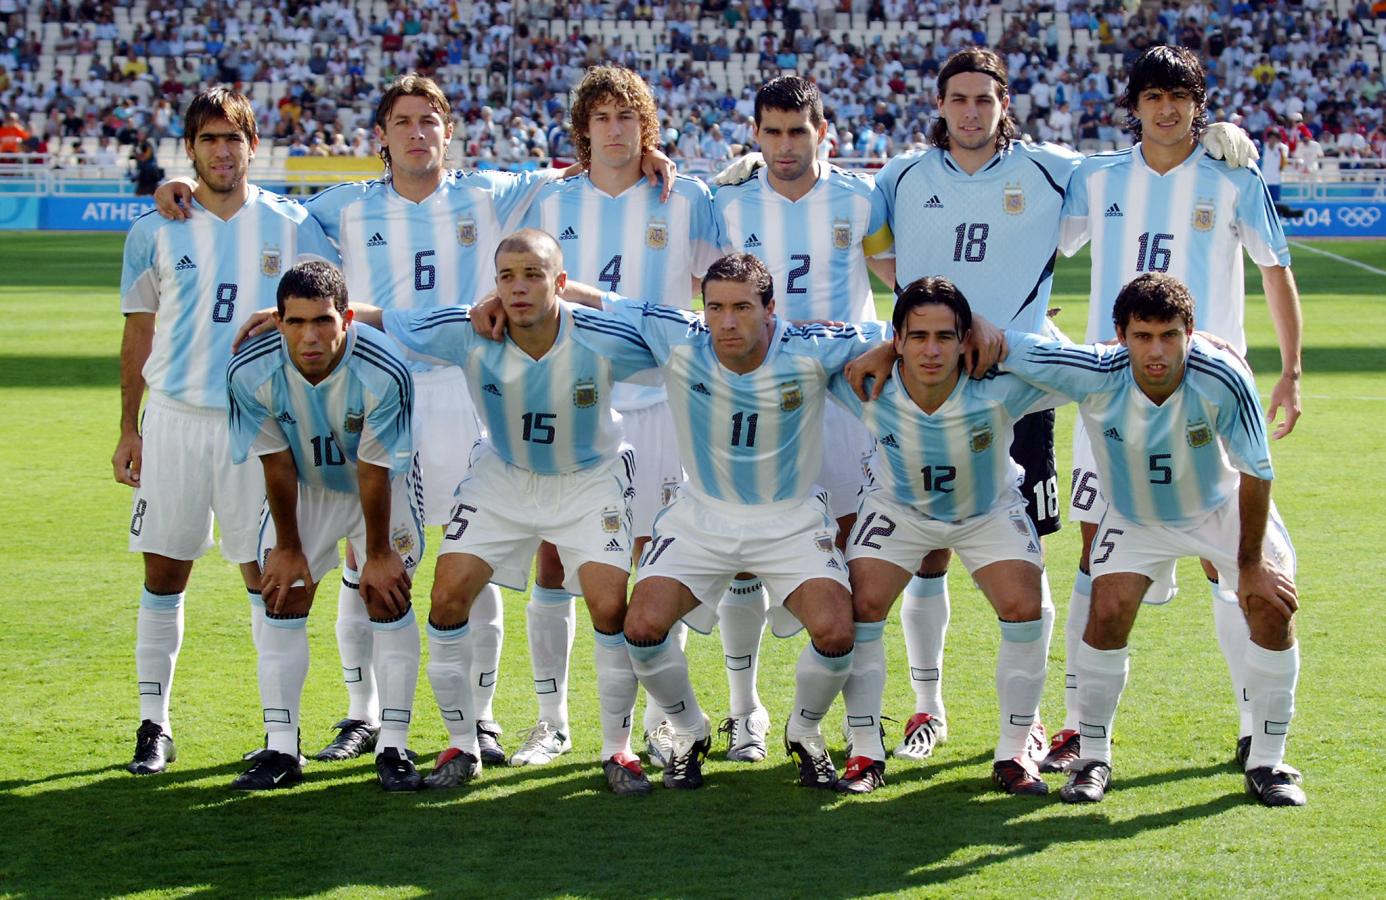 Imagen La formación de Argentina en la final de Atenas 2004.